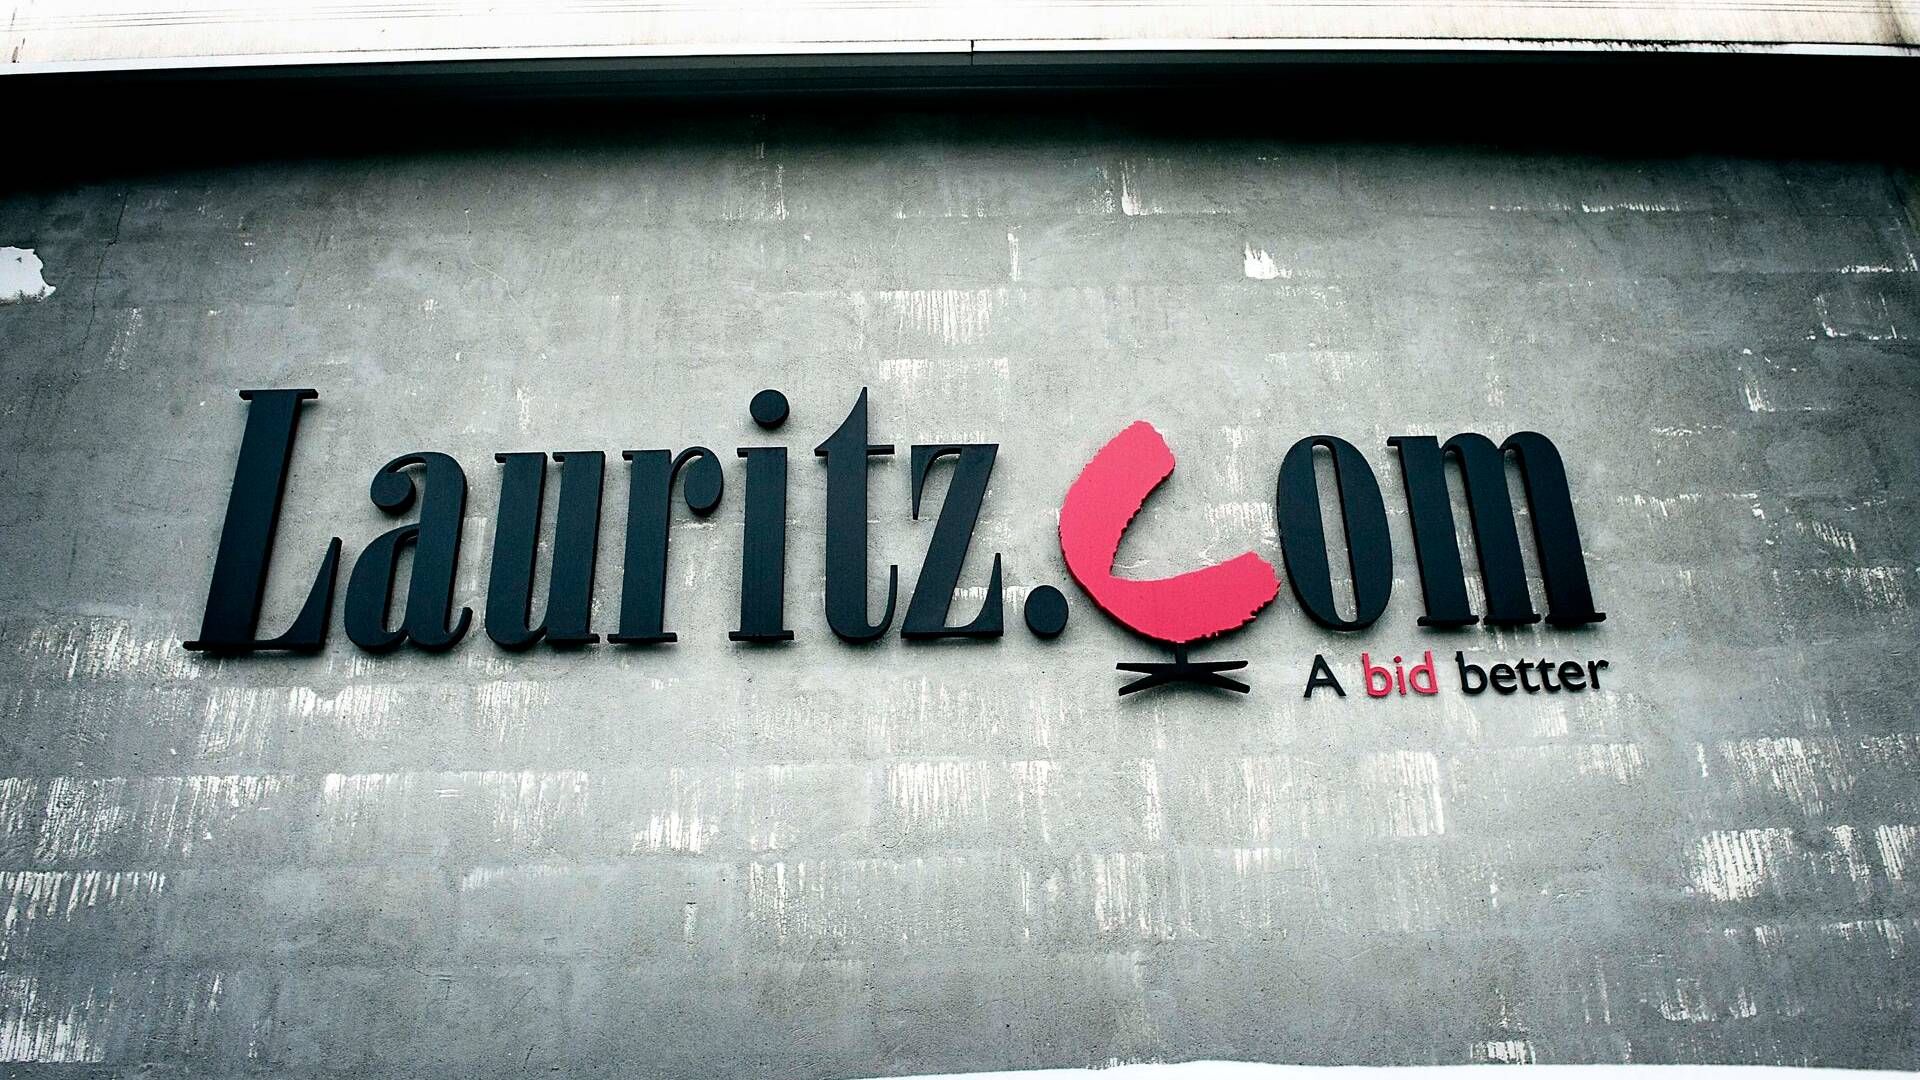 Onsdag kom det frem, at Lauritz.com har forsøgt at betale flere kunder med beviser på tilgodehavender. | Foto: Jens Dige/ritzau Scanpix